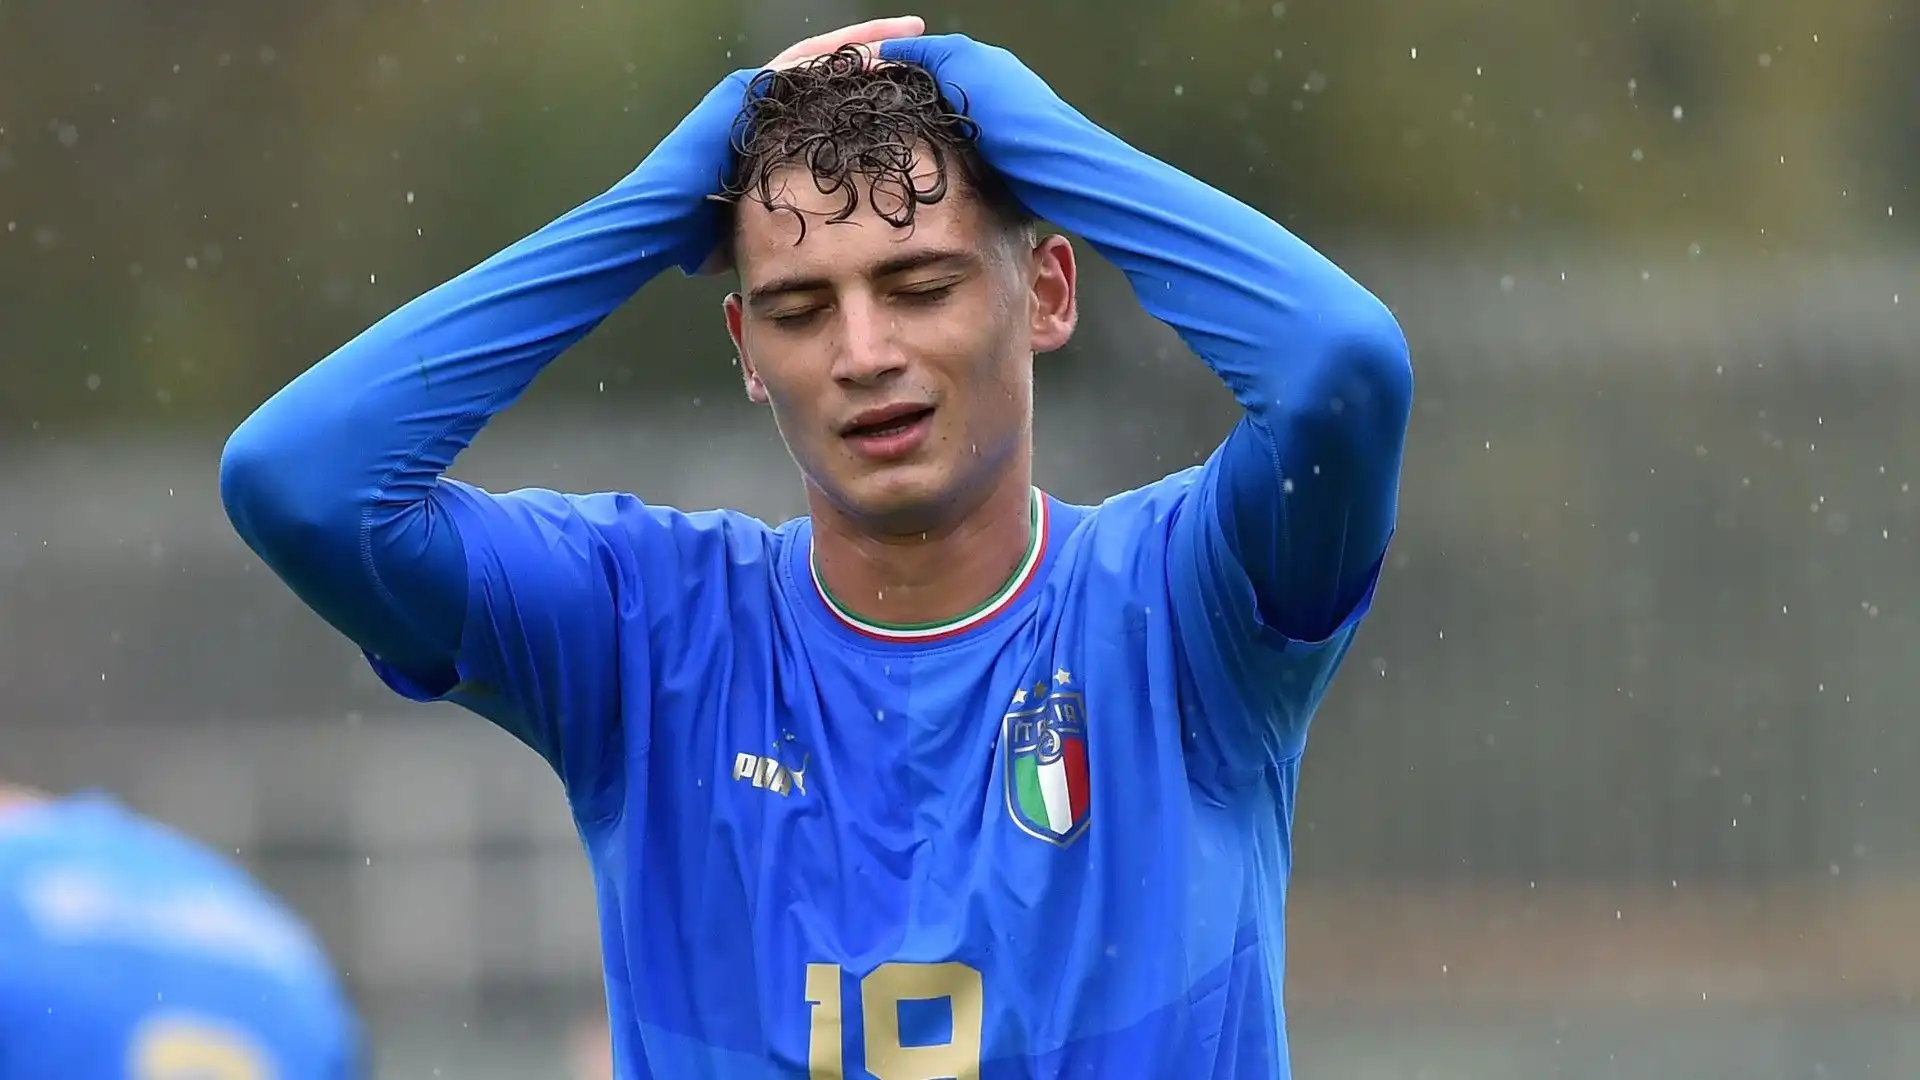 Sebastiano Esposito non rientra nei piani di Inzaghi al momento. L'Inter vorrebbe cederlo in prestito ma è disposta ad ascoltare proposte anche per la cessione a titolo definitivo